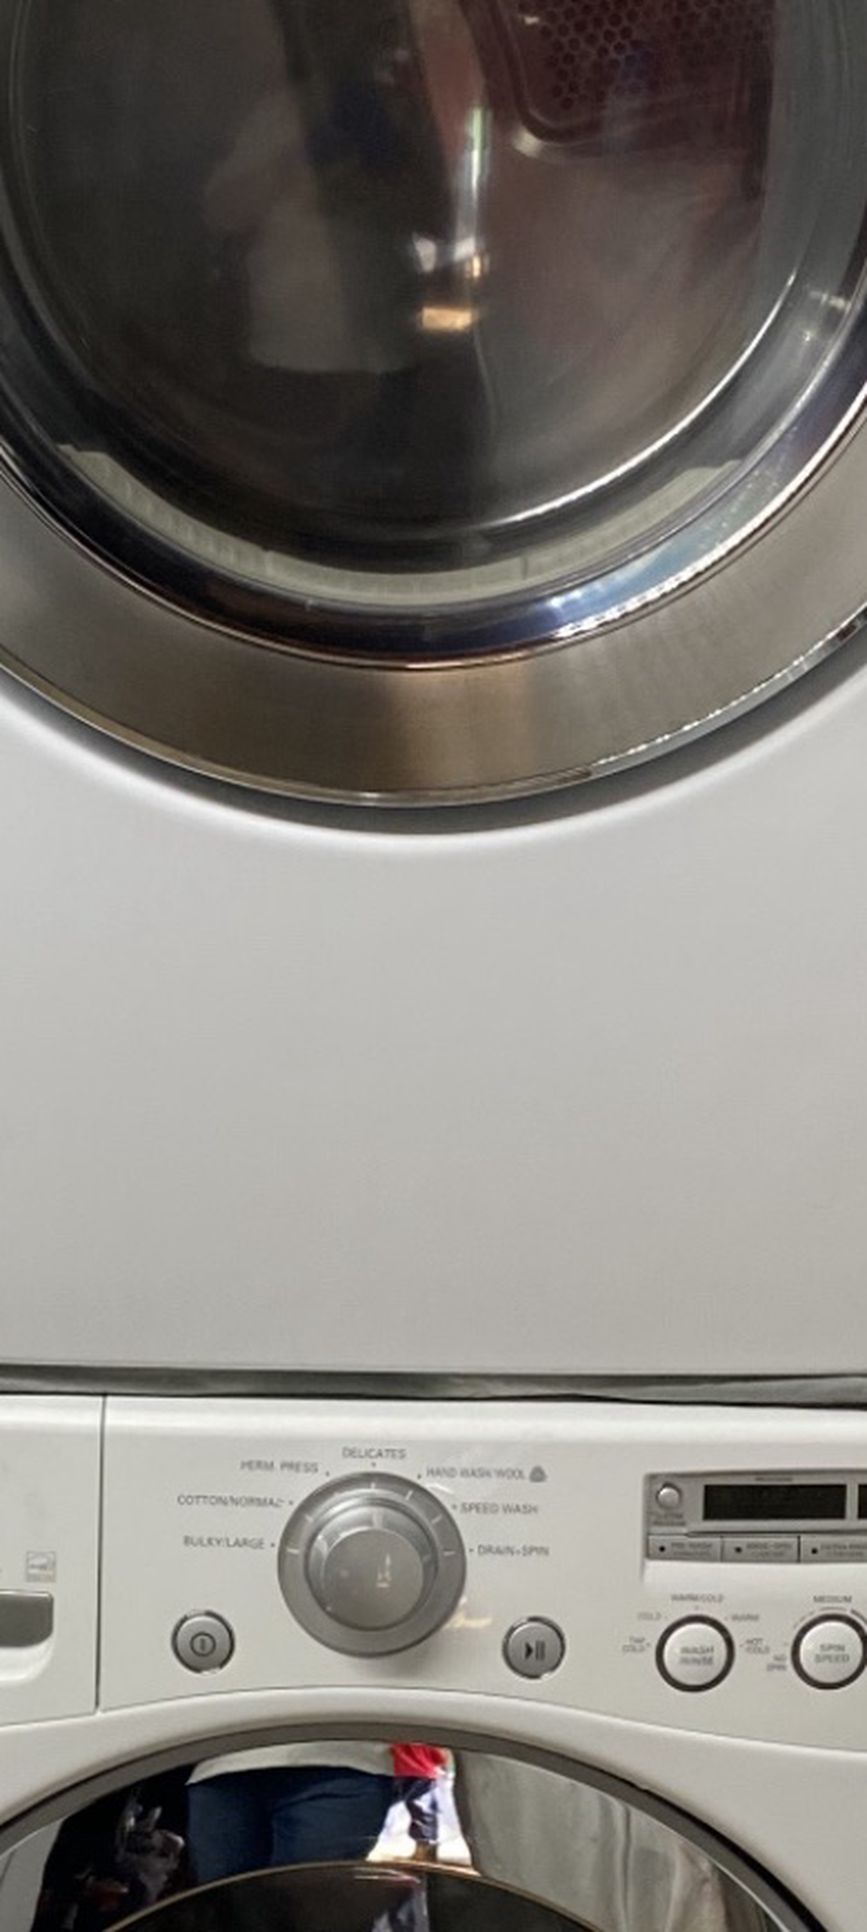 LG Stackable Washer & Dryer Set